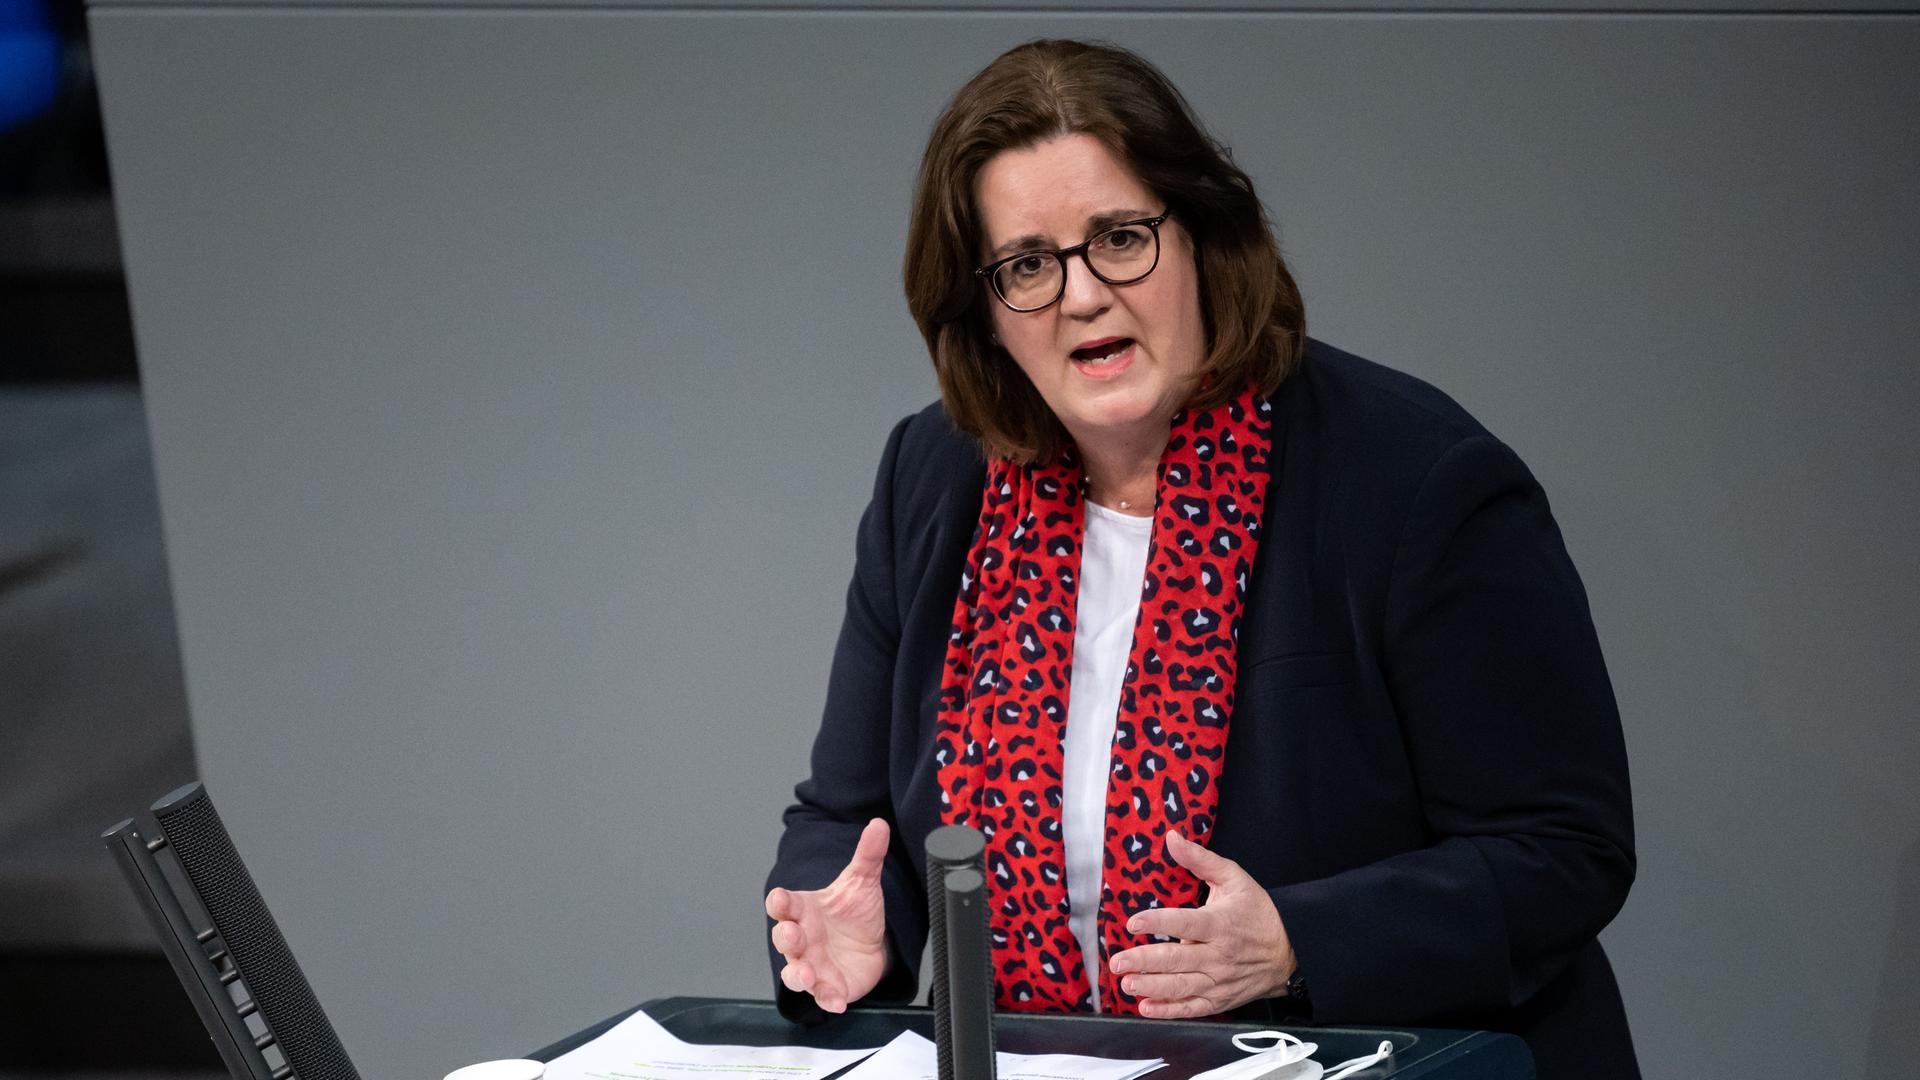 Kerstin Griese (SPD), Parlamentarische Staatssekretärin im Bundesministerium für Arbeit und Soziales, spricht während der dreitägigen Debatte über die Politik der Ampel-Koalition im Bundestag.